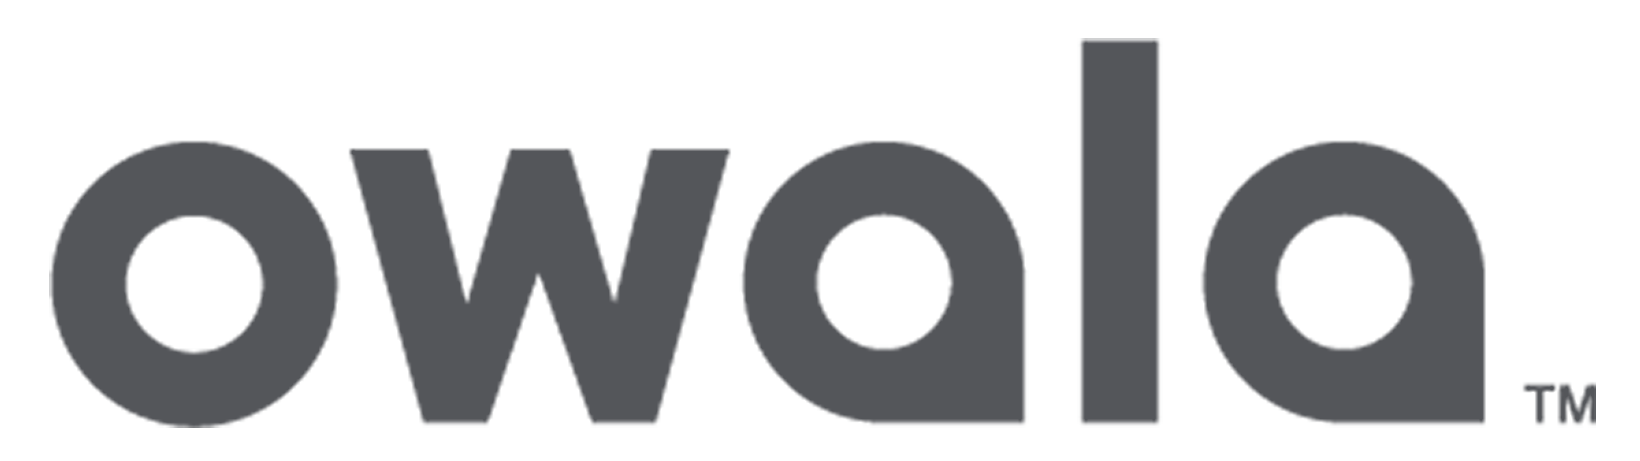 Owala logo